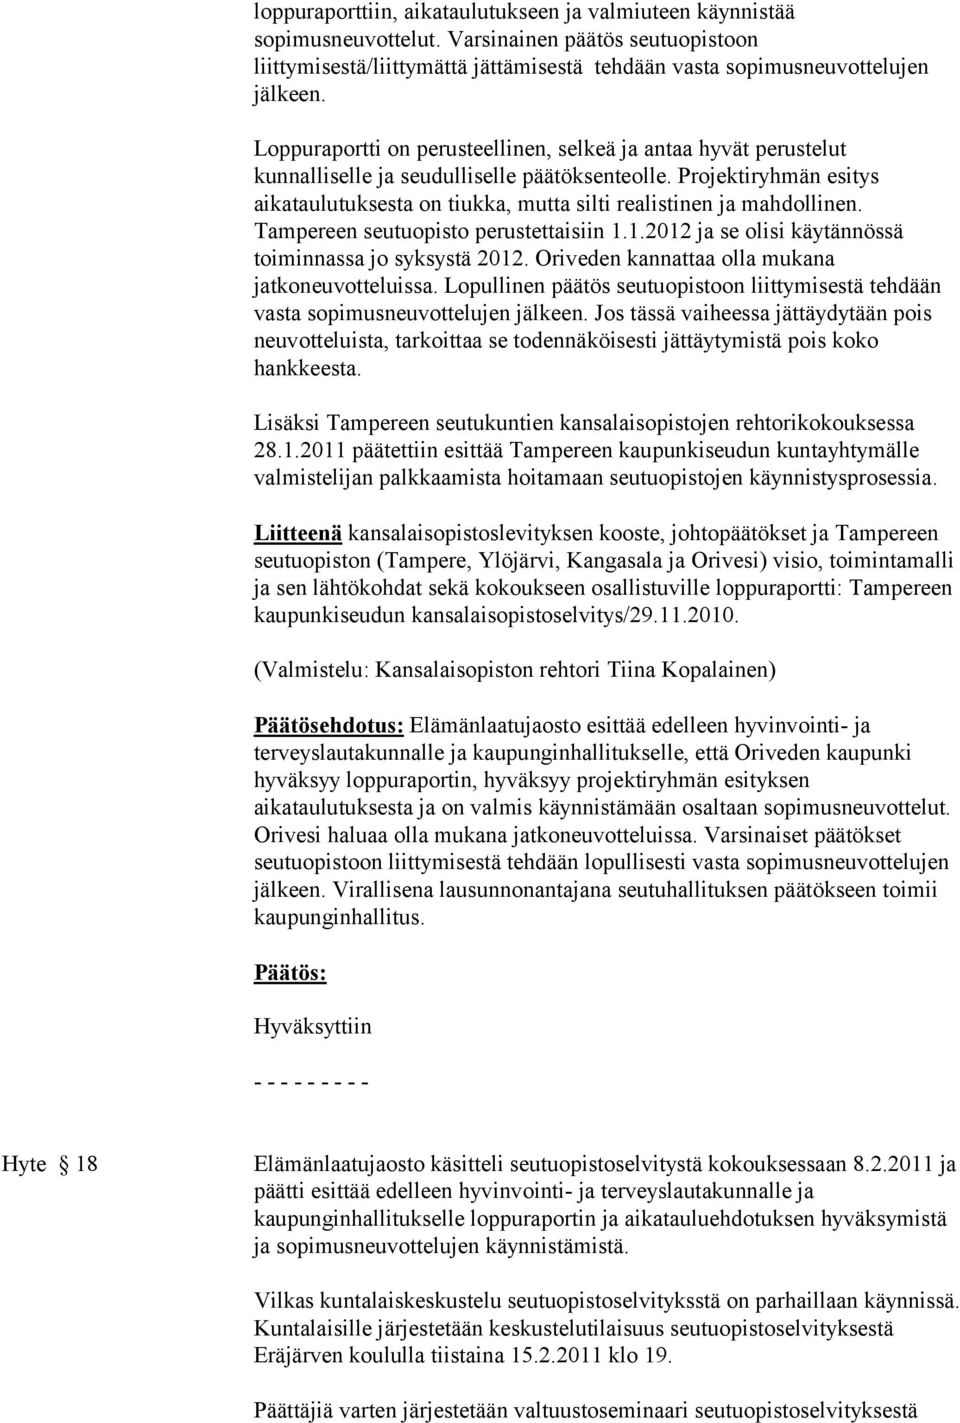 Projektiryhmän esitys aikataulutuksesta on tiukka, mutta silti realistinen ja mahdollinen. Tampereen seutuopisto perustettaisiin 1.1.2012 ja se olisi käytännössä toiminnassa jo syksystä 2012.